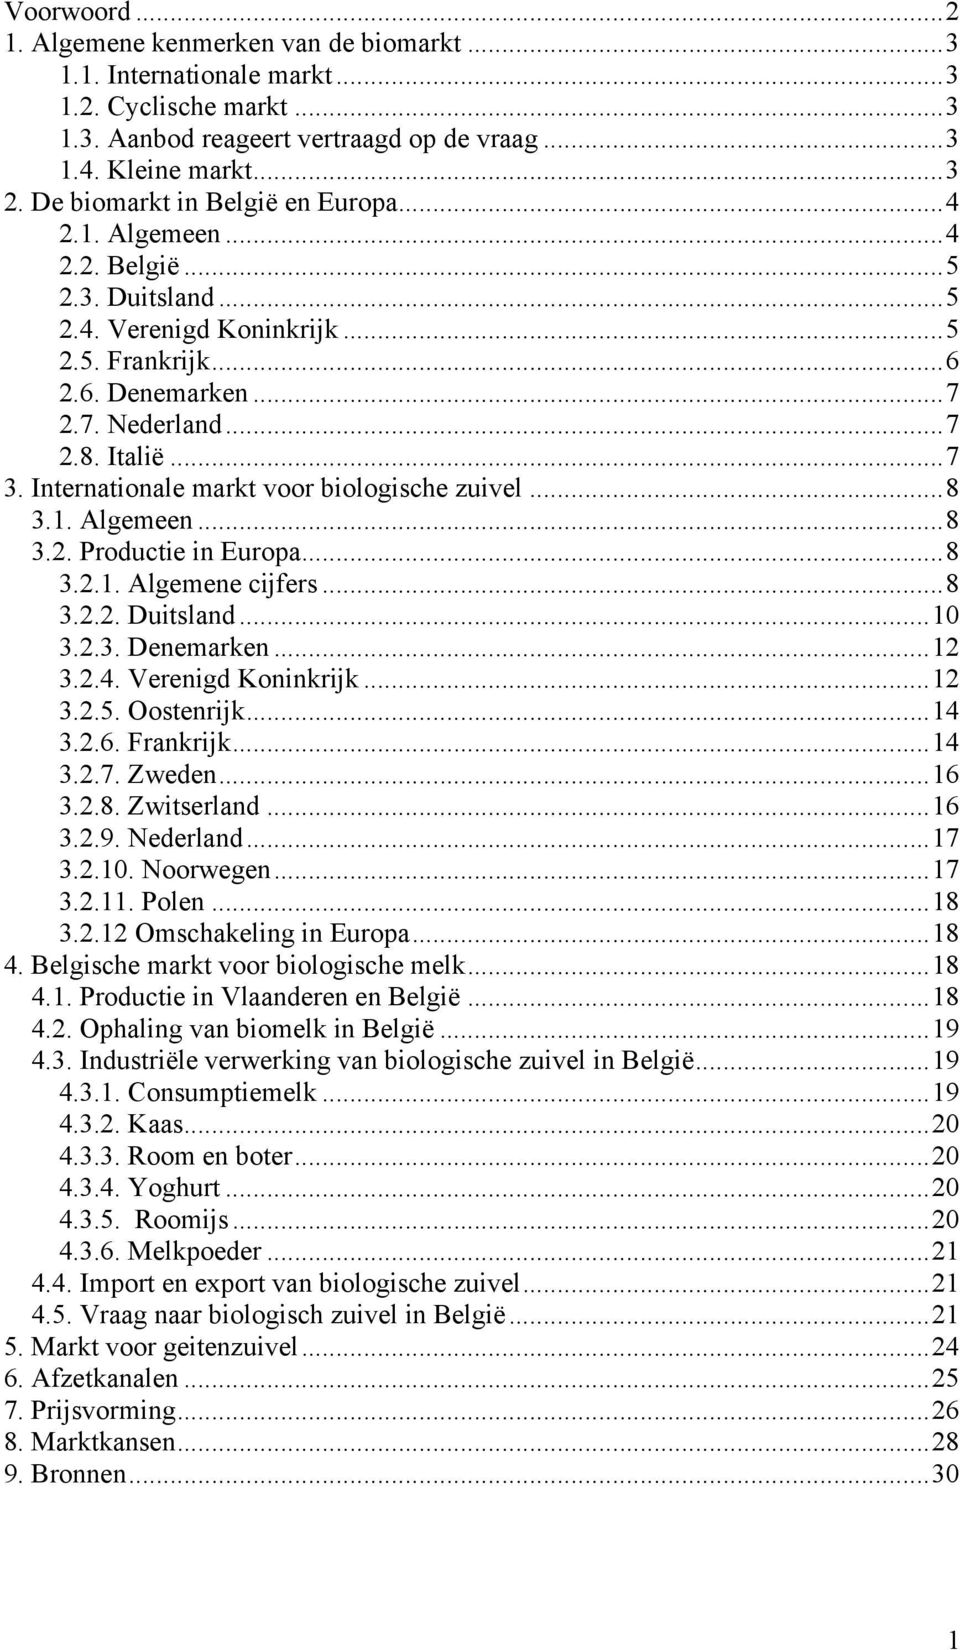 Internationale markt voor biologische zuivel...8 3.1. Algemeen...8 3.2. Productie in Europa...8 3.2.1. Algemene cijfers...8 3.2.2. Duitsland...10 3.2.3. Denemarken...12 3.2.4. Verenigd Koninkrijk.